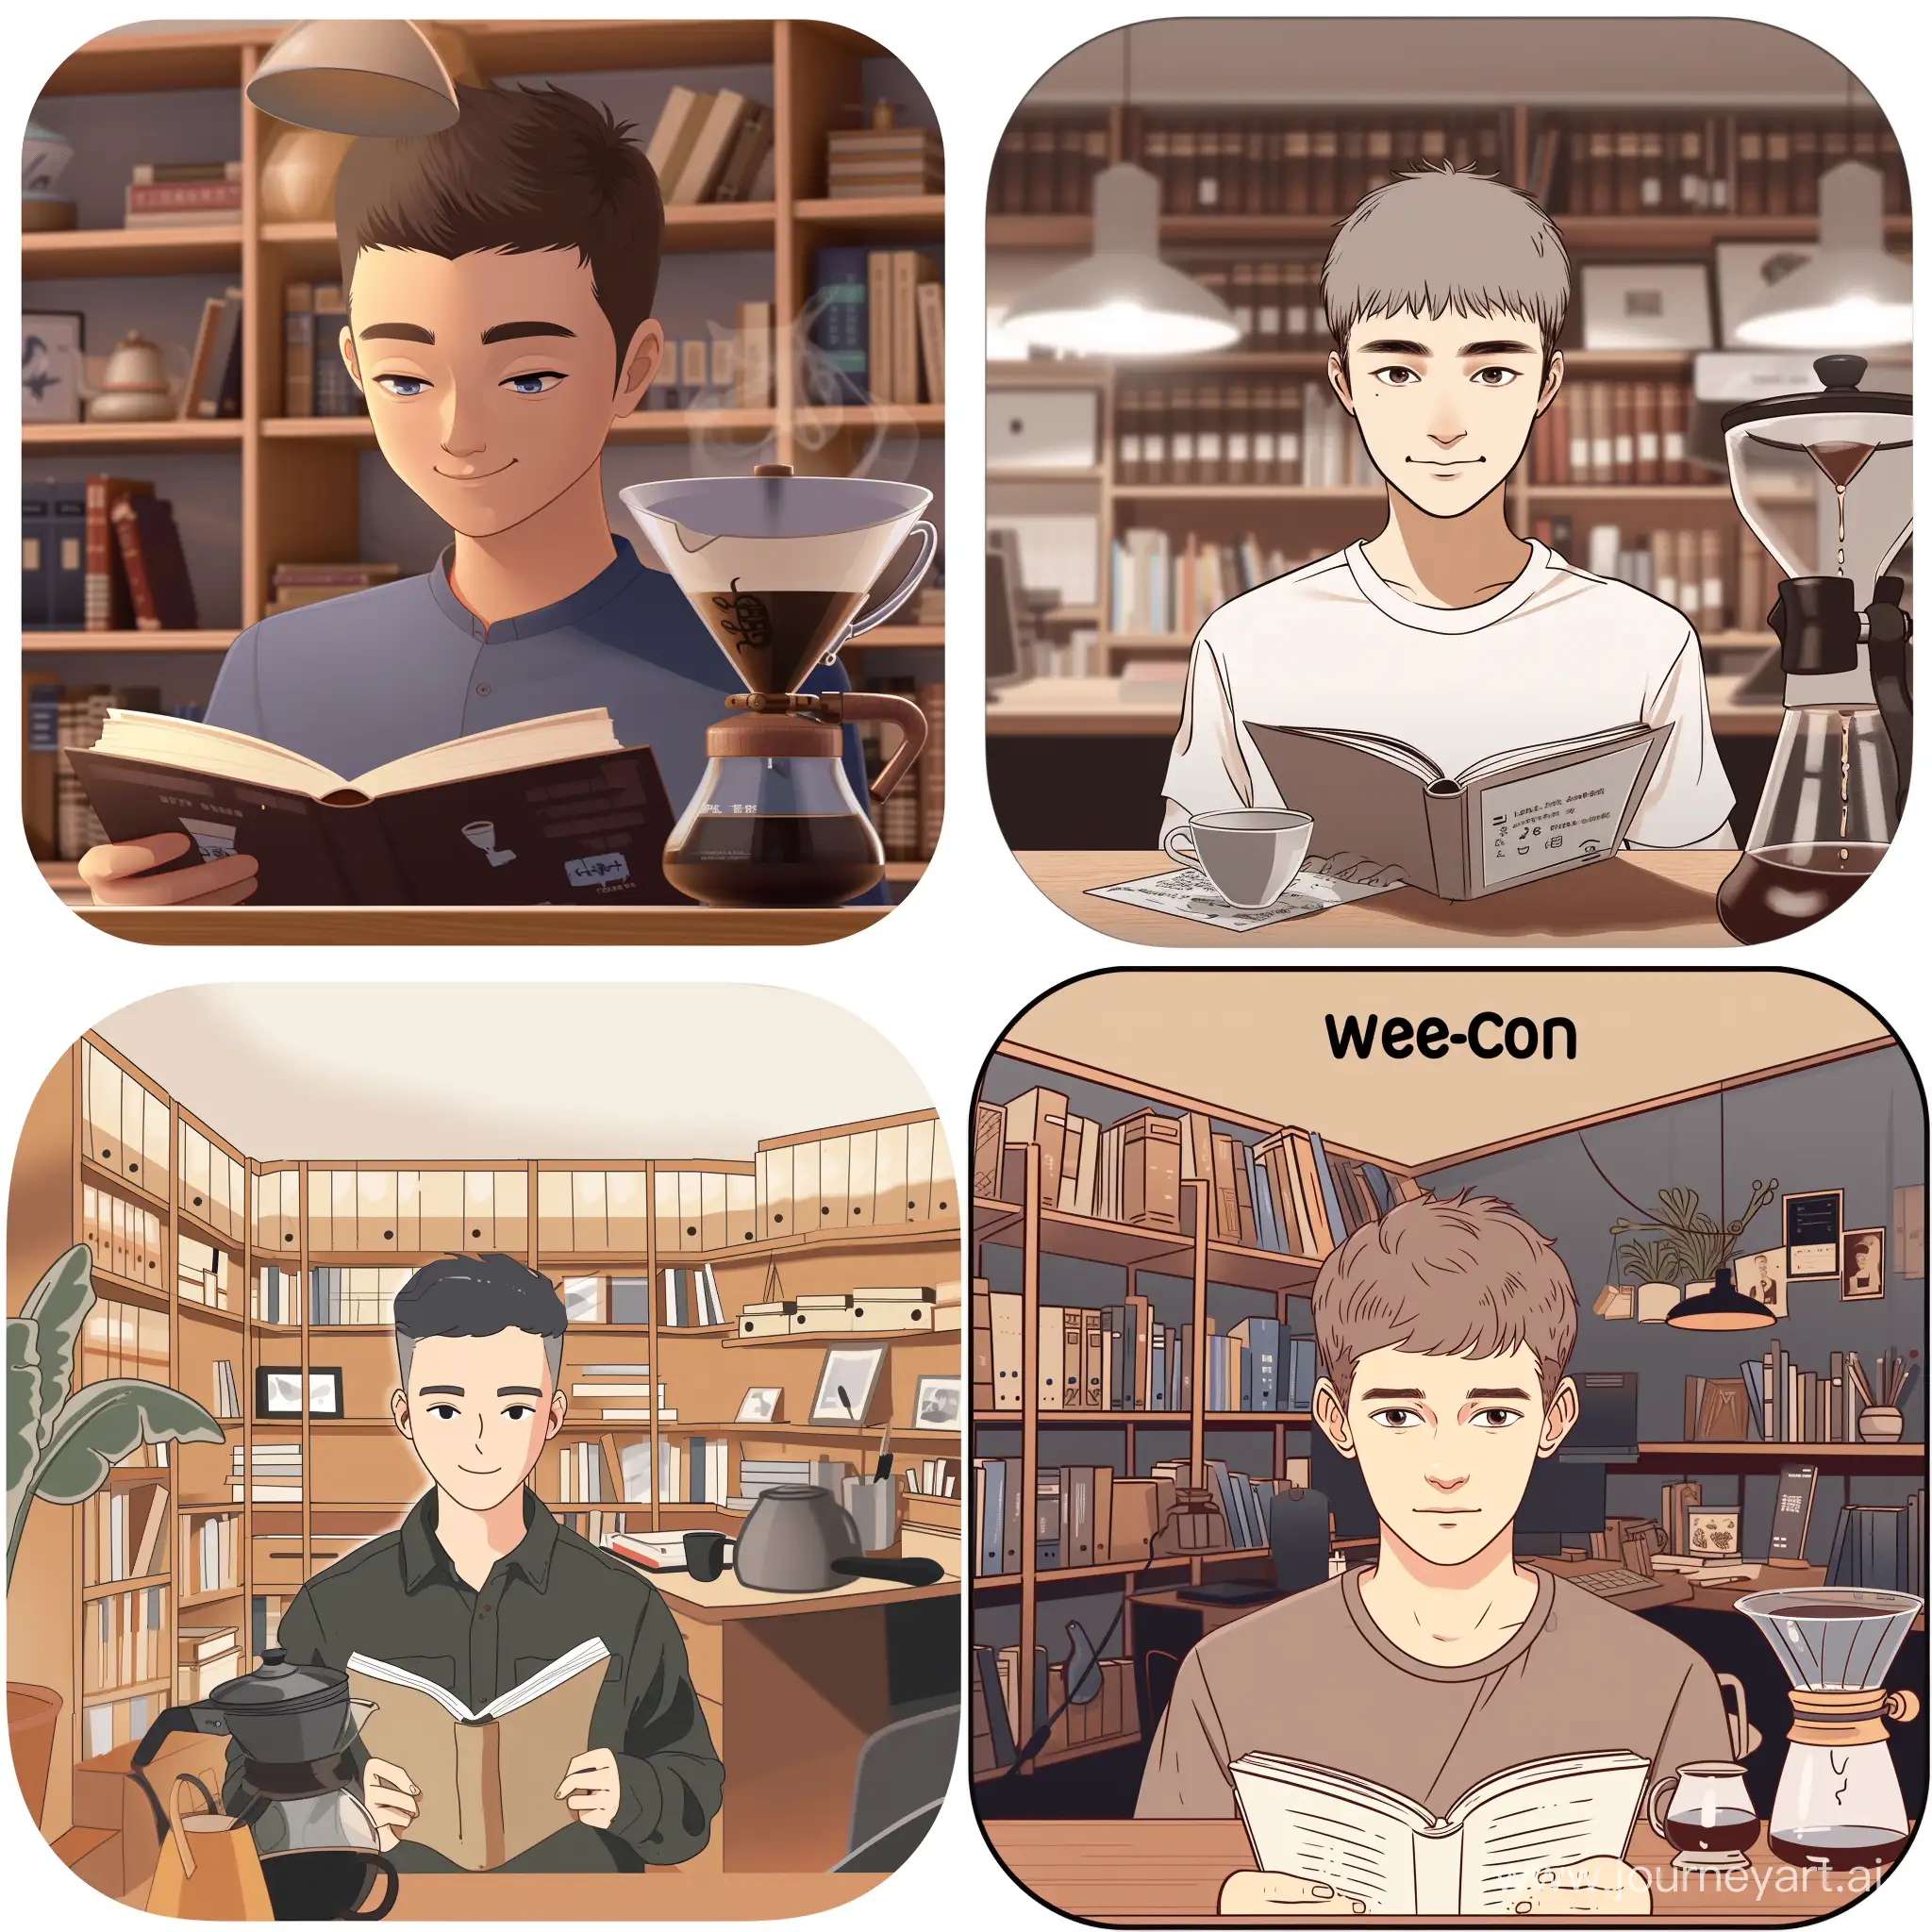 社交软件微信的头像, 男性, 短发, 正在阅读, 背景是书房, 有书架, 书桌上有专业的手冲咖啡壶